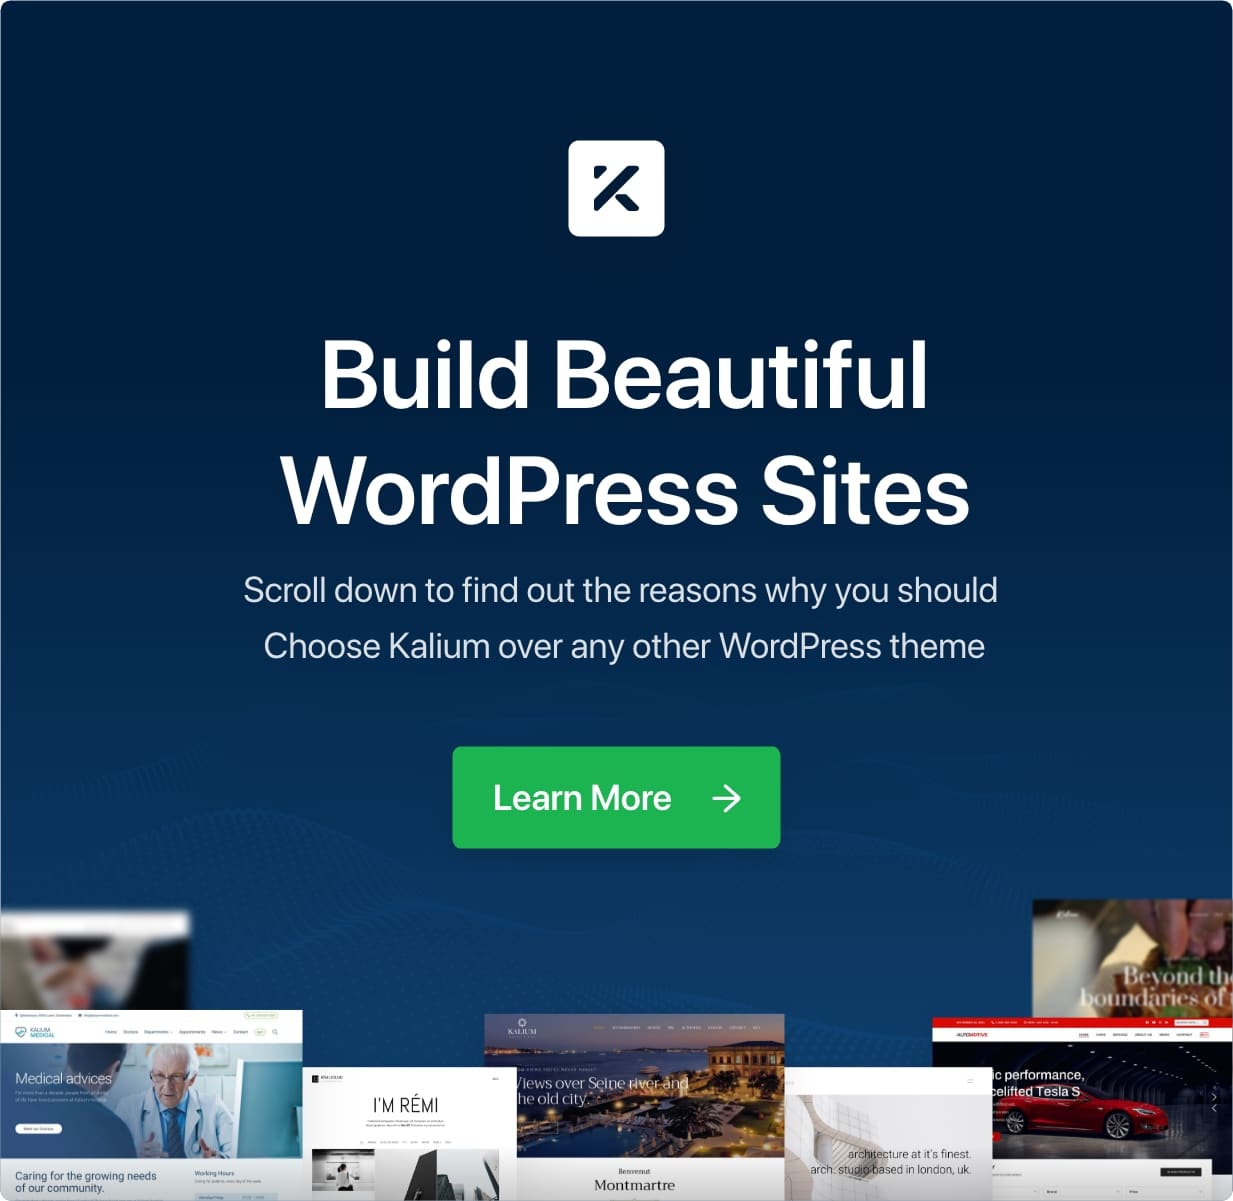 Cree hermosos sitios de WordPress con Kalium